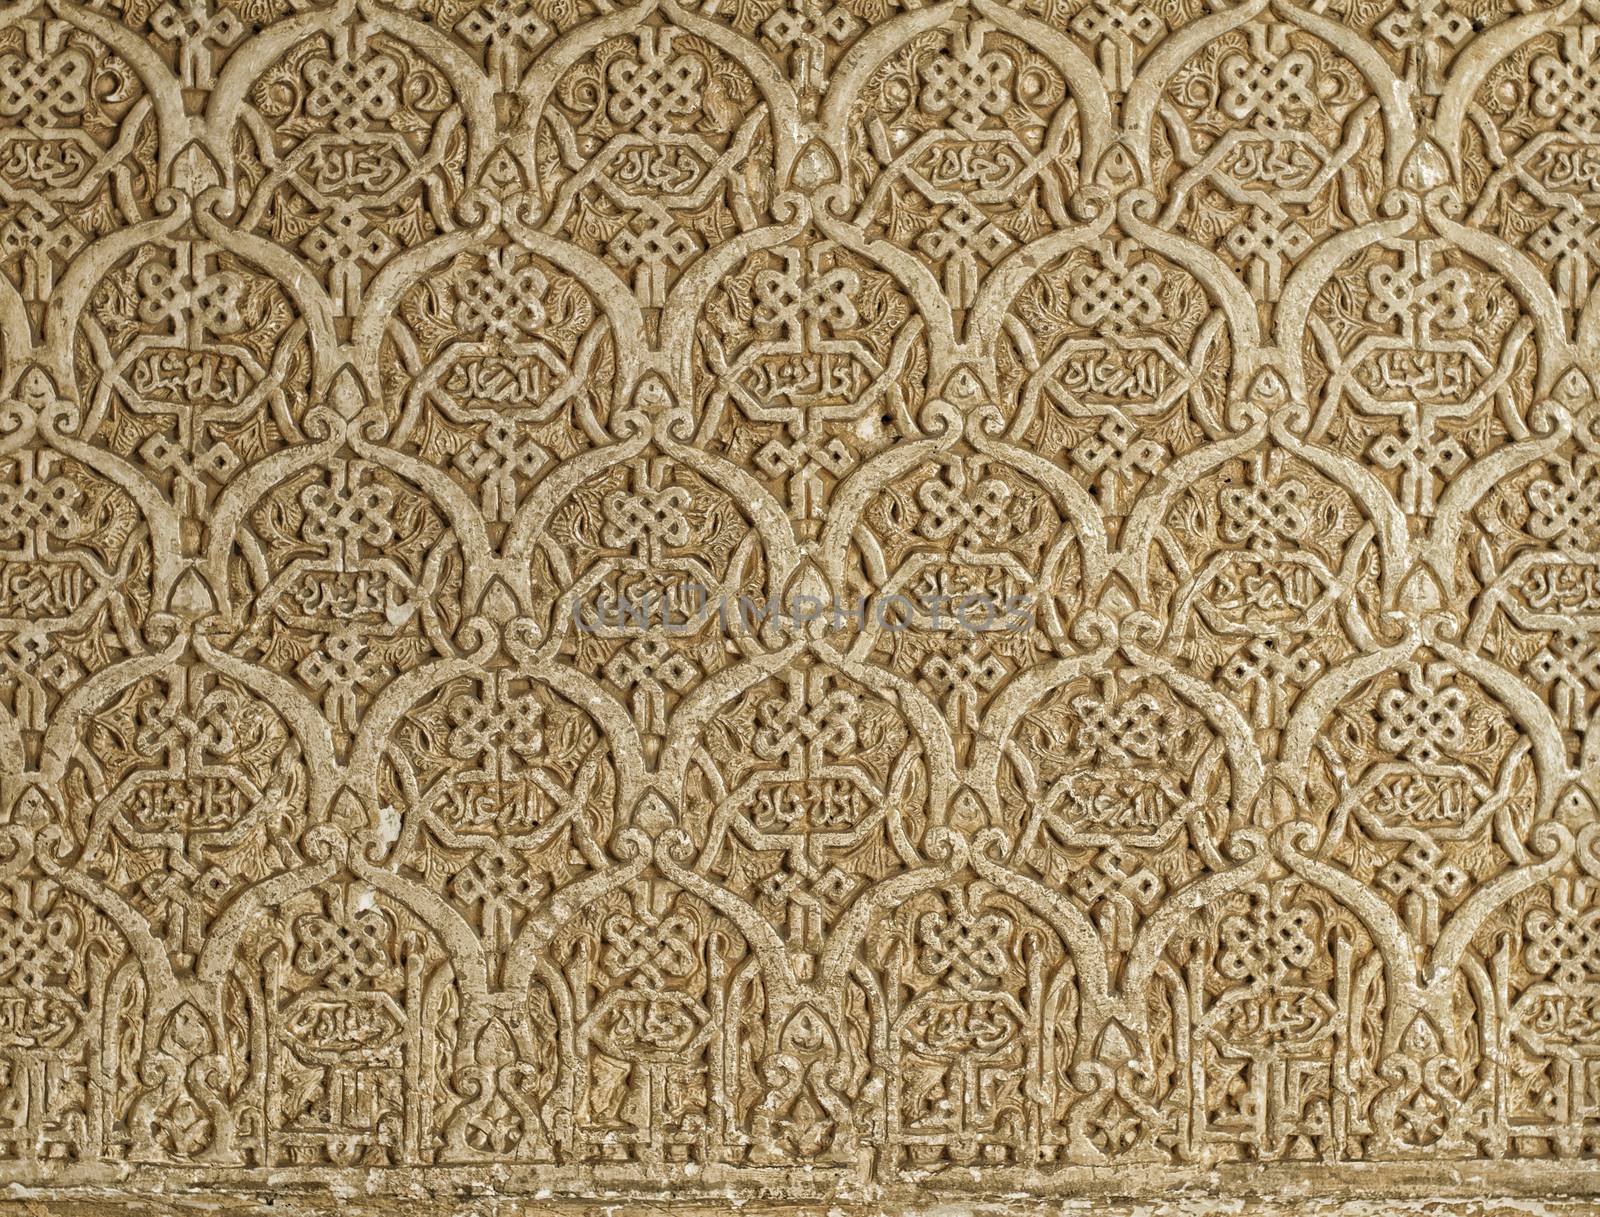 Islamic ornaments on a wall  by deyan_georgiev